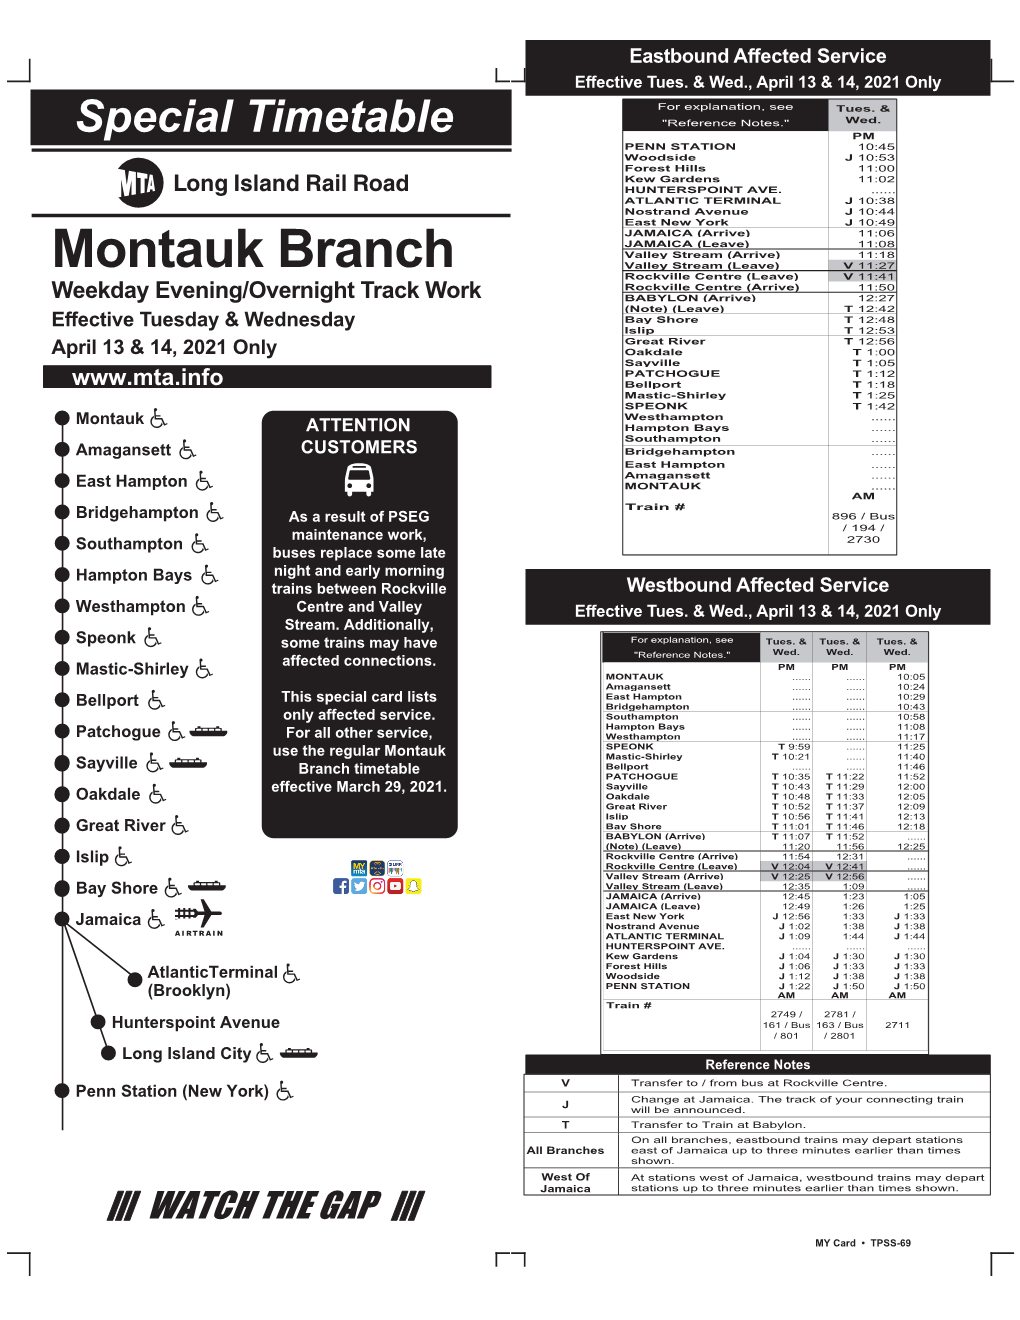 Montauk Branch